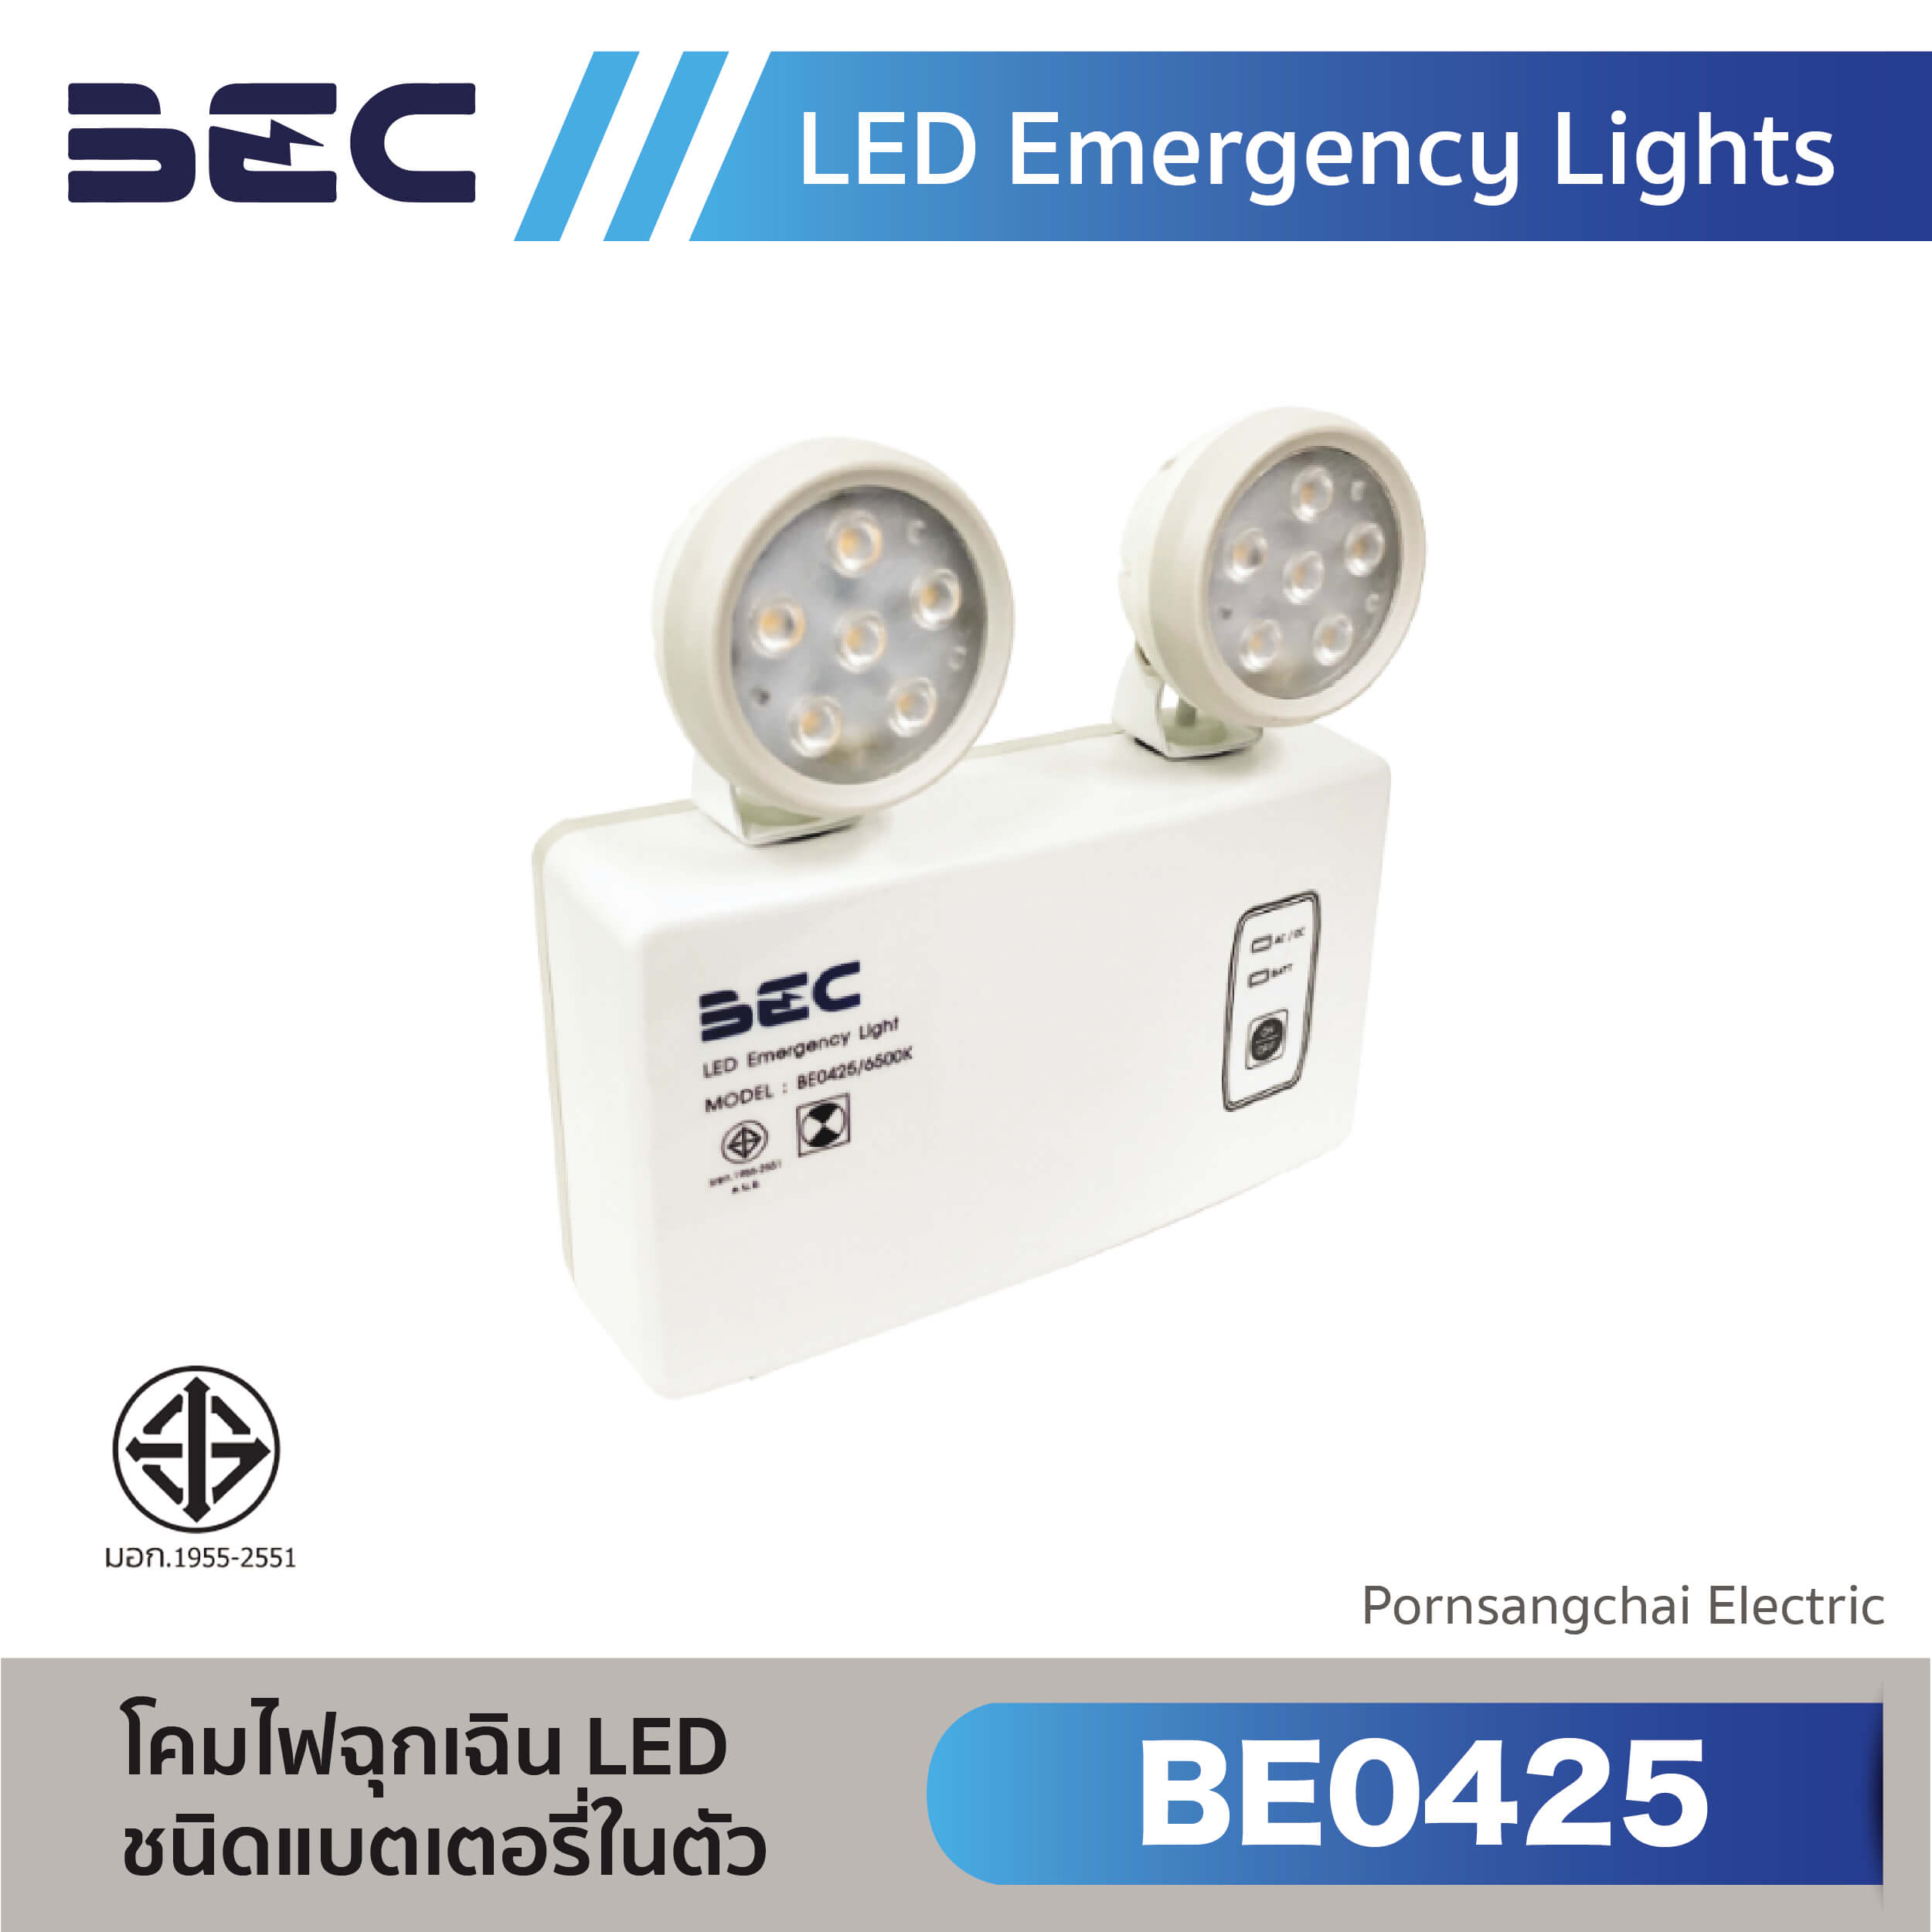 BEC LED Emergency Lights BE0425